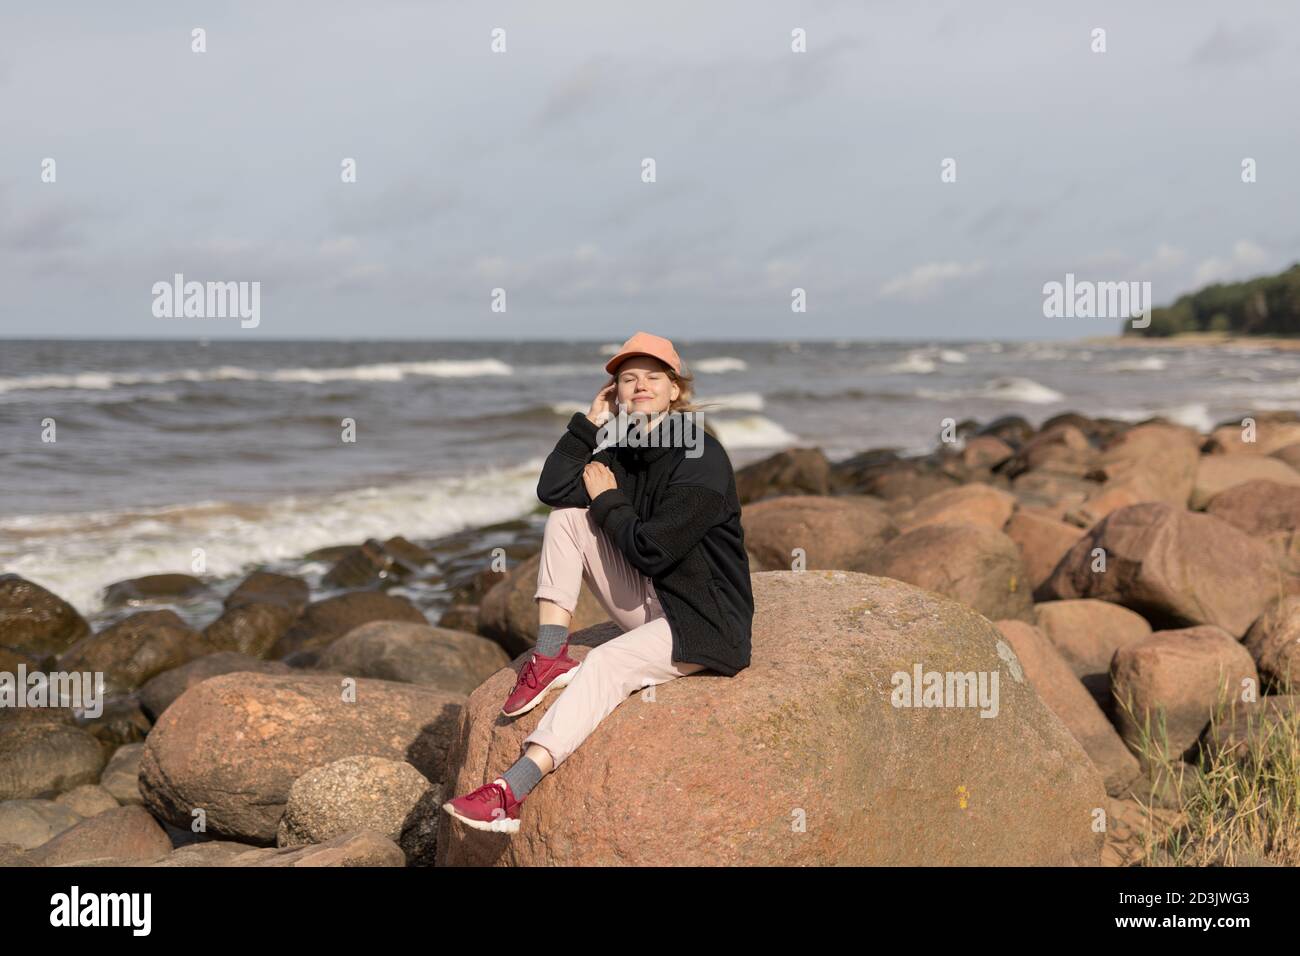 Eine glückliche junge, blonde Frau, die auf einem Felsen sitzt und das Leben genießt Stockfoto